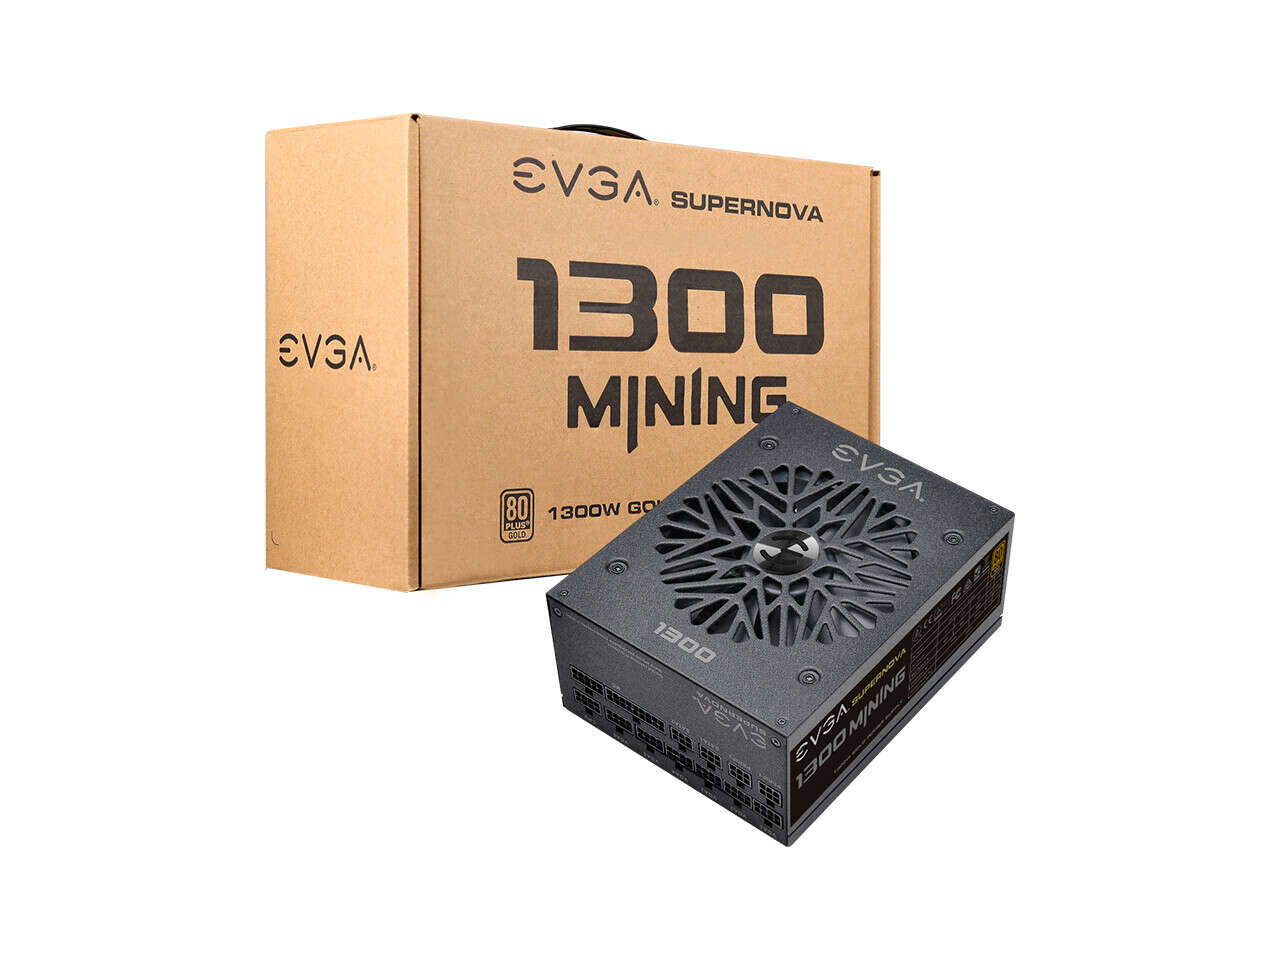 EVGA پاور مخصوص ماینینگ SuperNova 1300 M1 را عرضه کرد